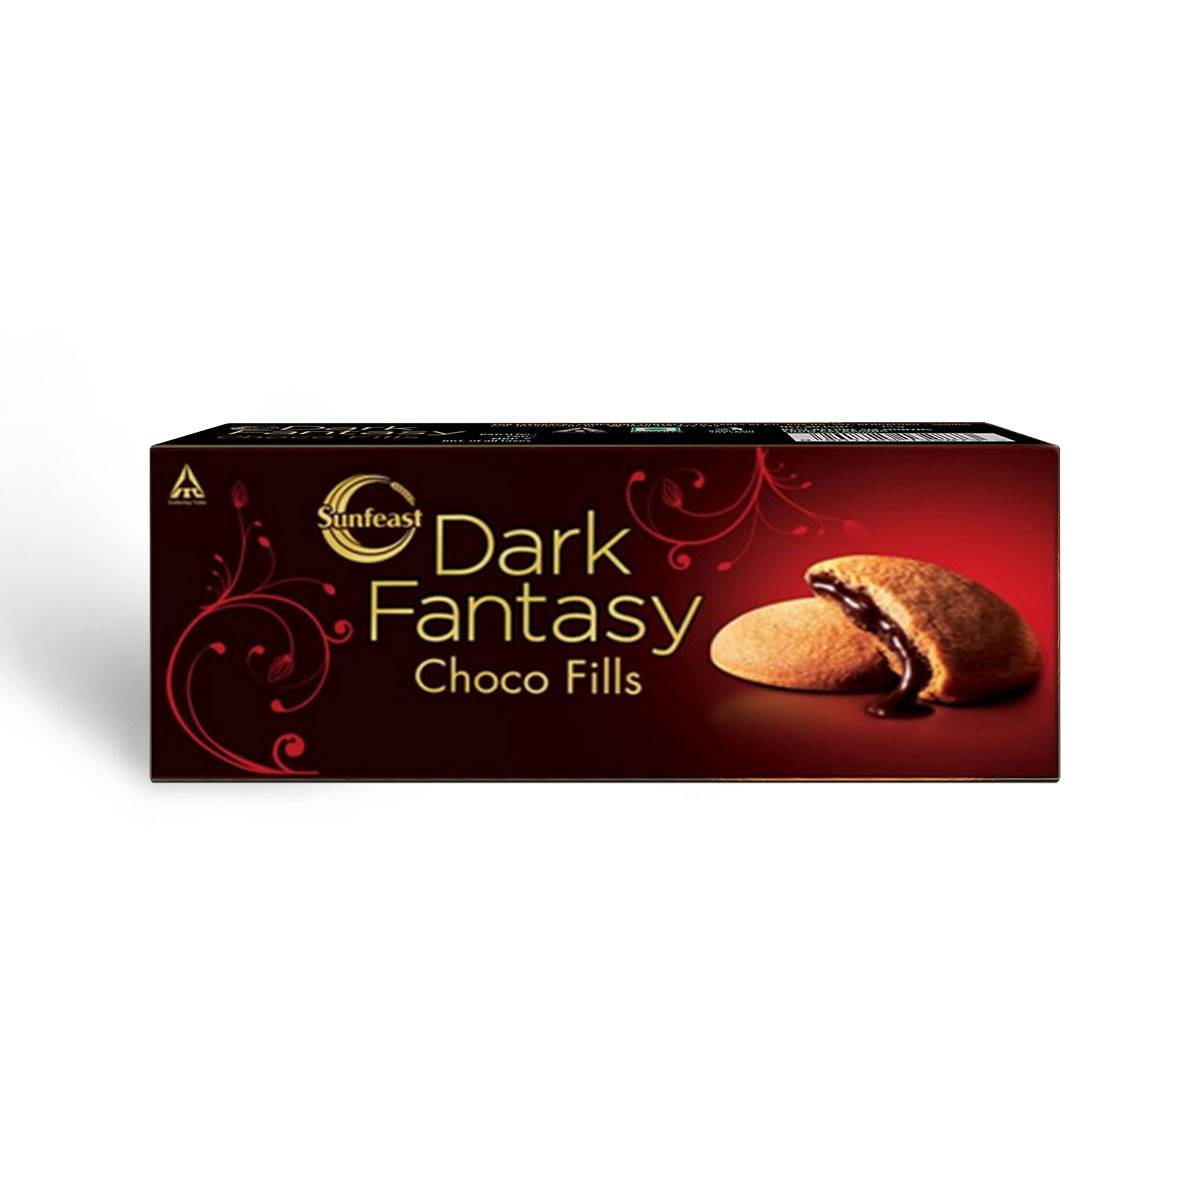 Dark Fantasy Choco Fills Biscuit